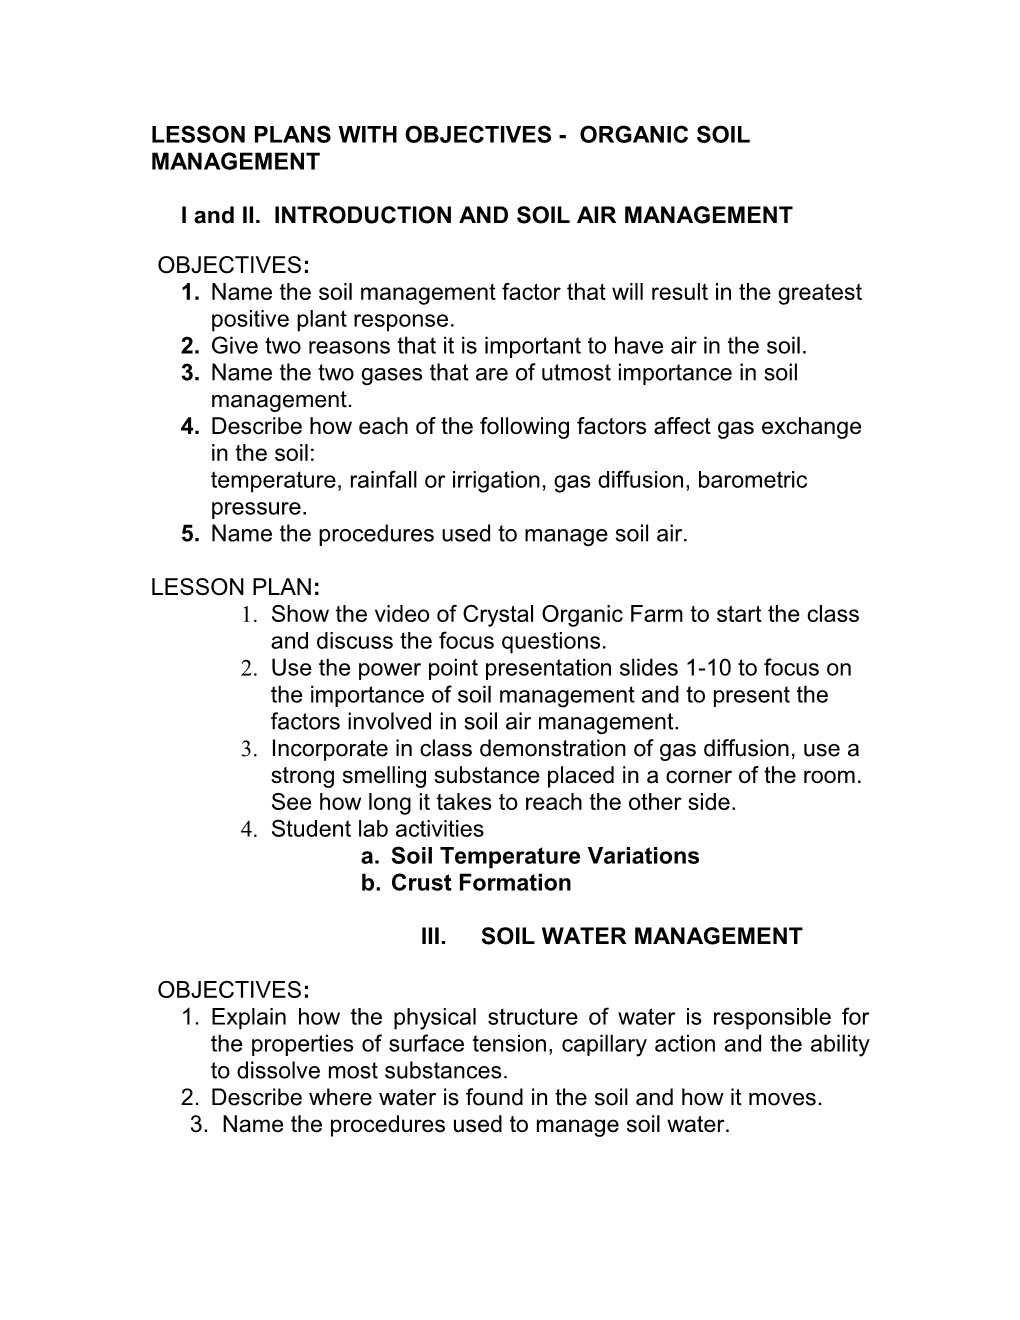 Lesson Plan Unit 2 Organic Soil Management